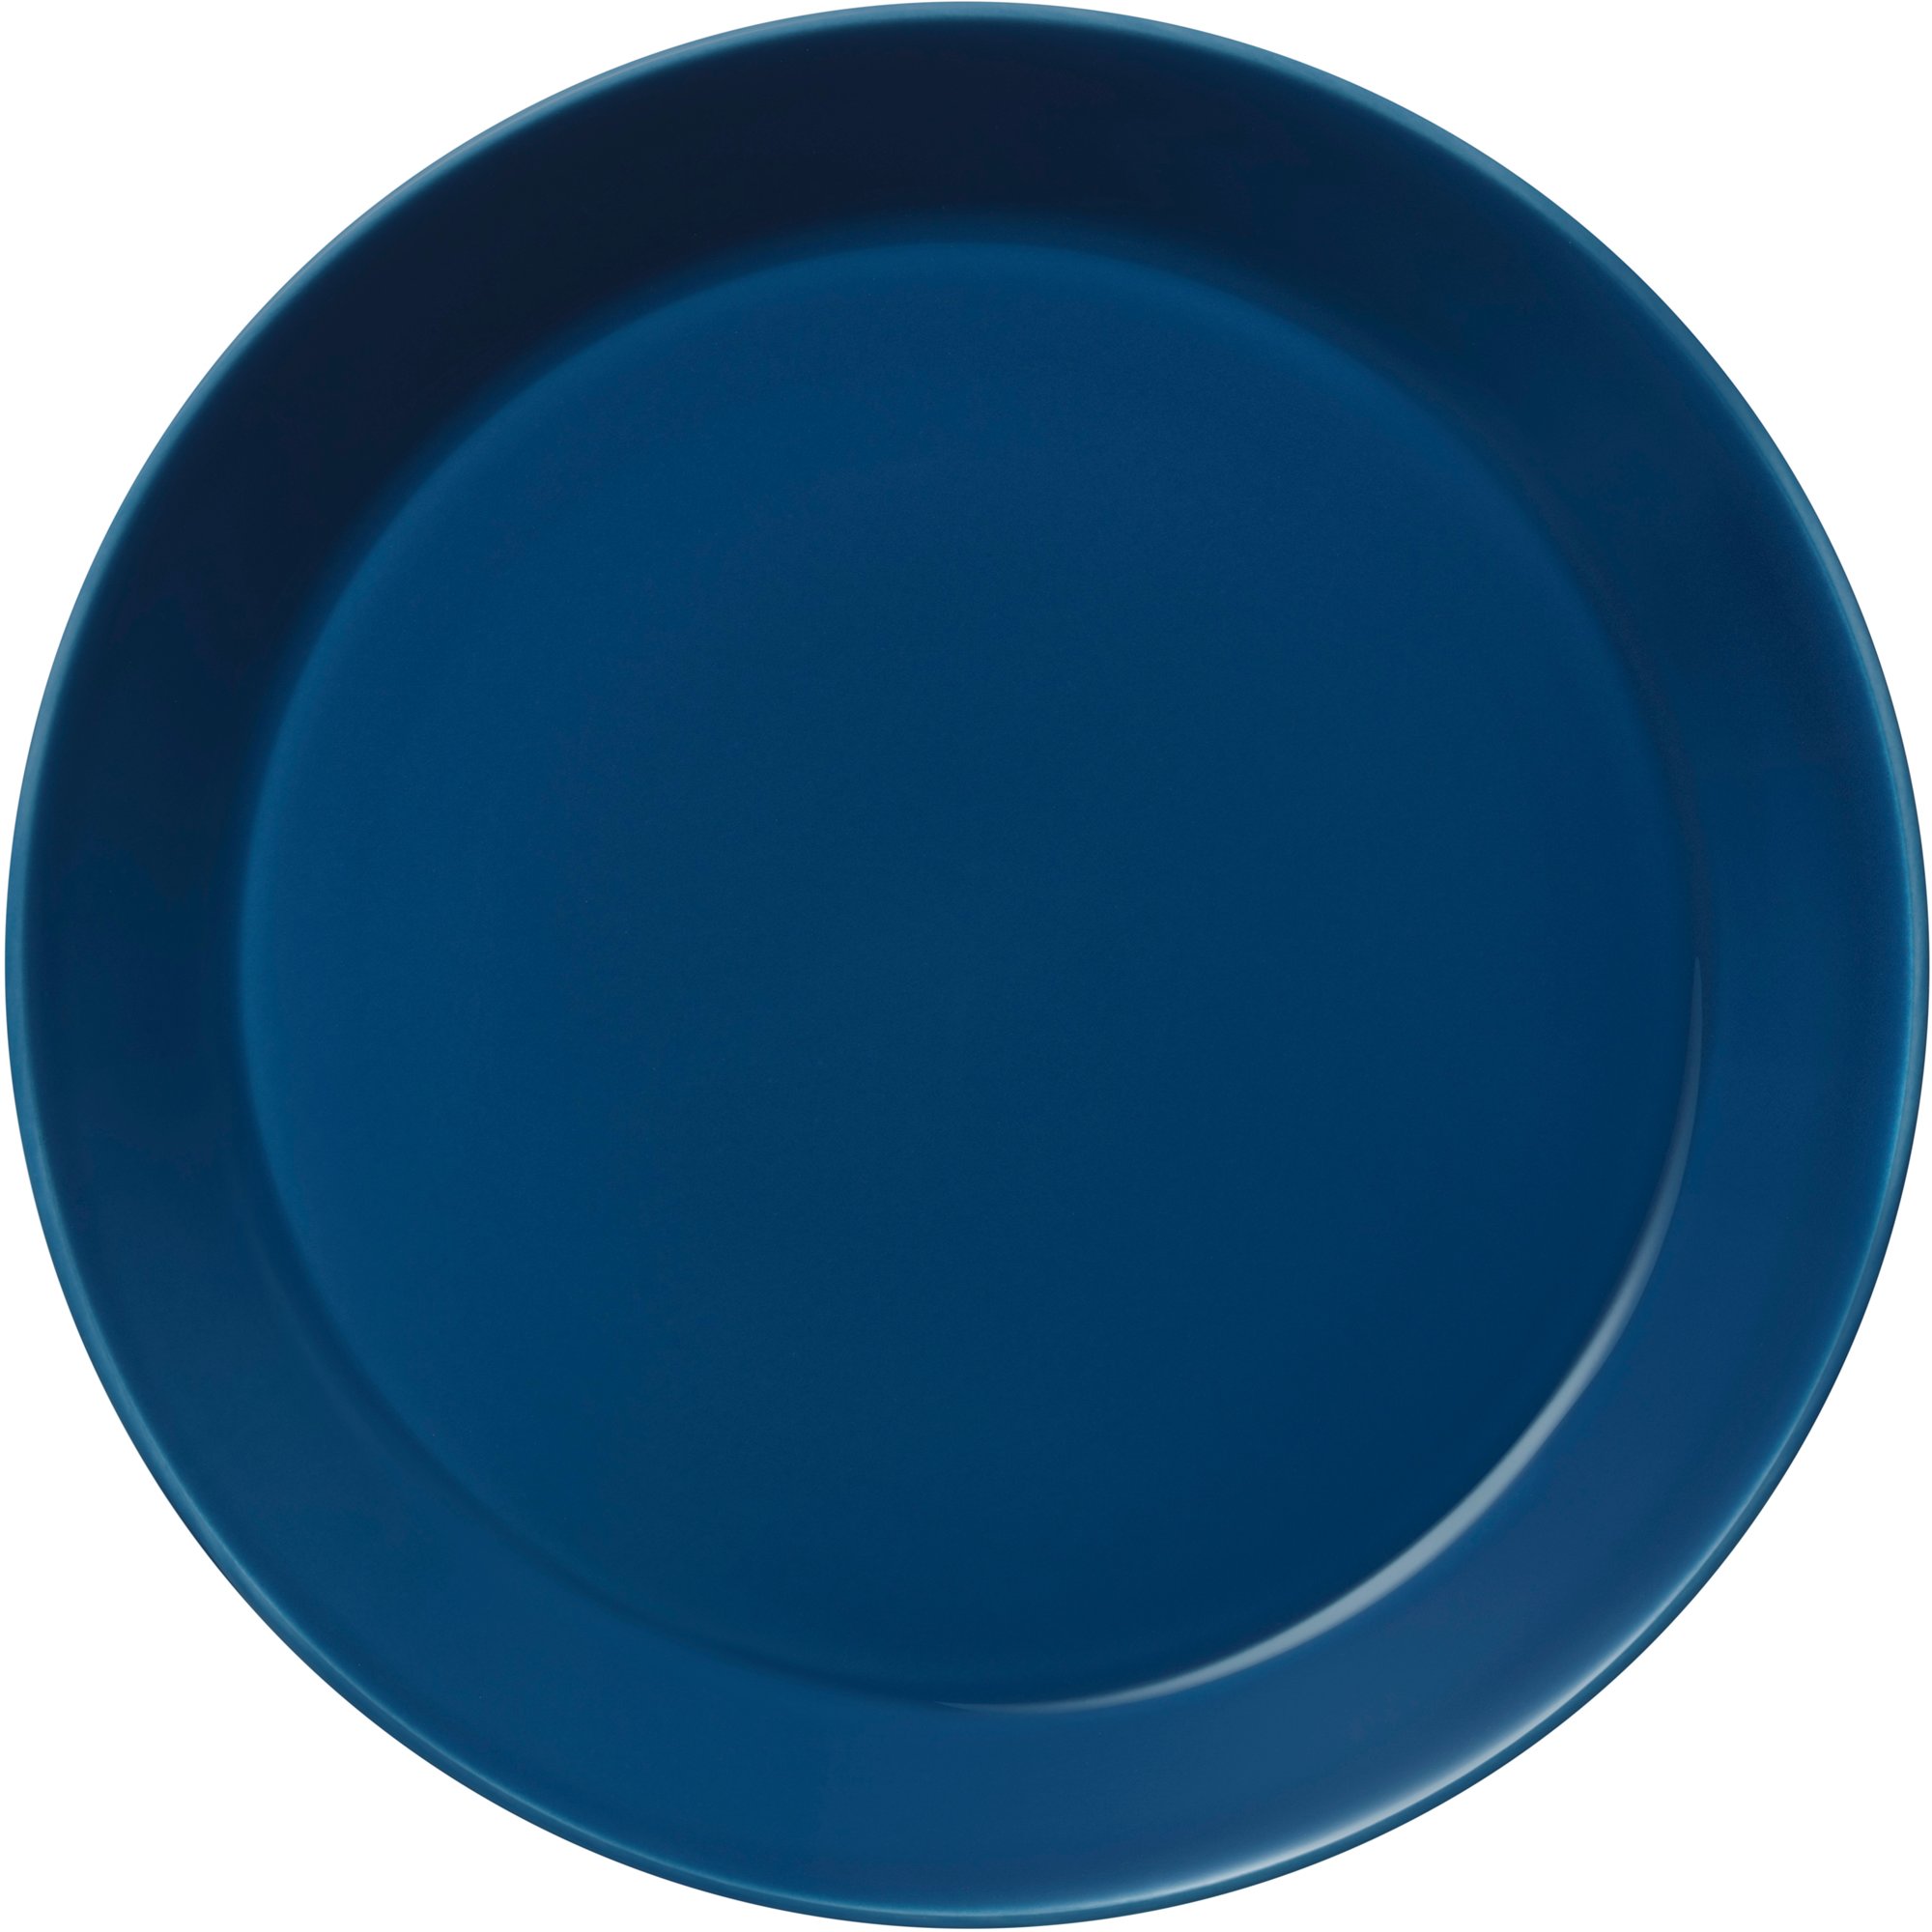 Iittala Teema tallerken, 26 cm, vintage blå